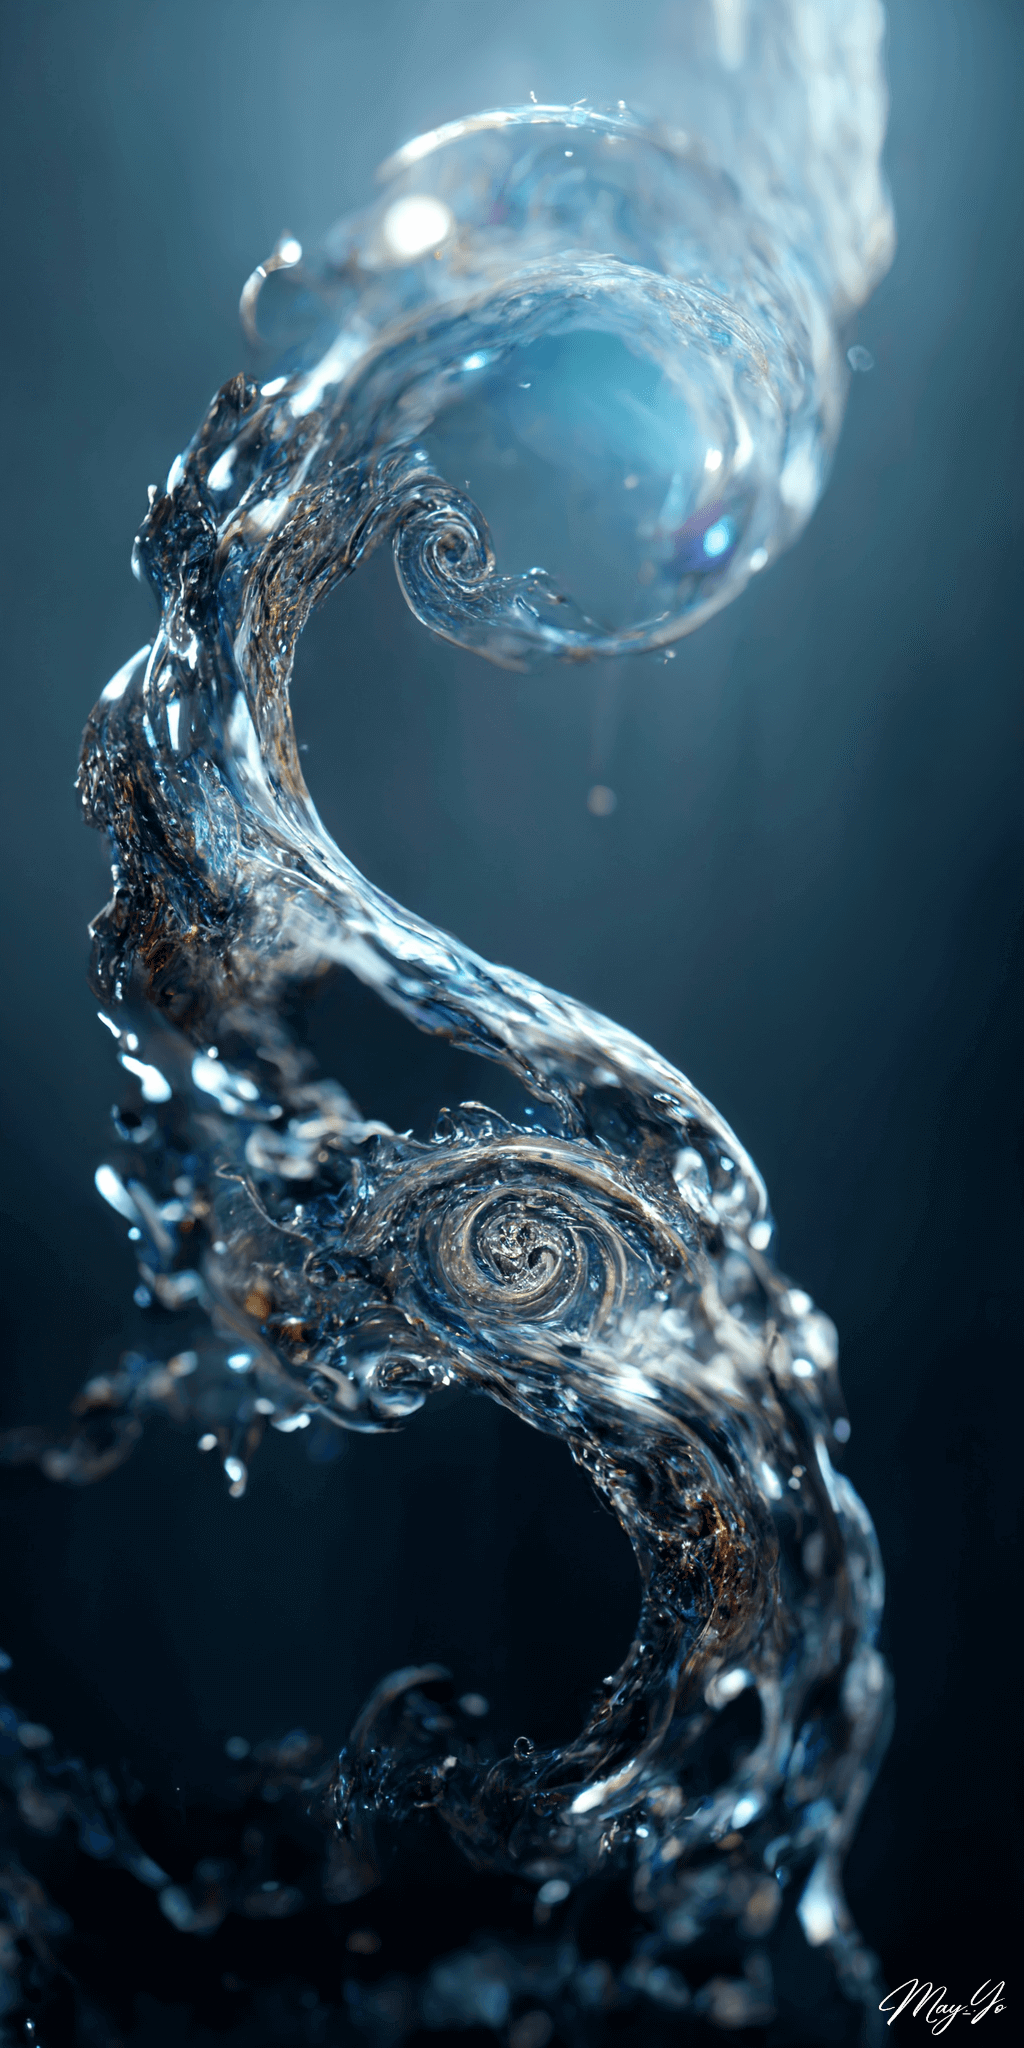 飛び散る水滴がリアルな水の魔法の壁紙イラスト 水流・渦をイメージした待受 AIイラスト待受 縦長画像 water magic illustration fantasy splash